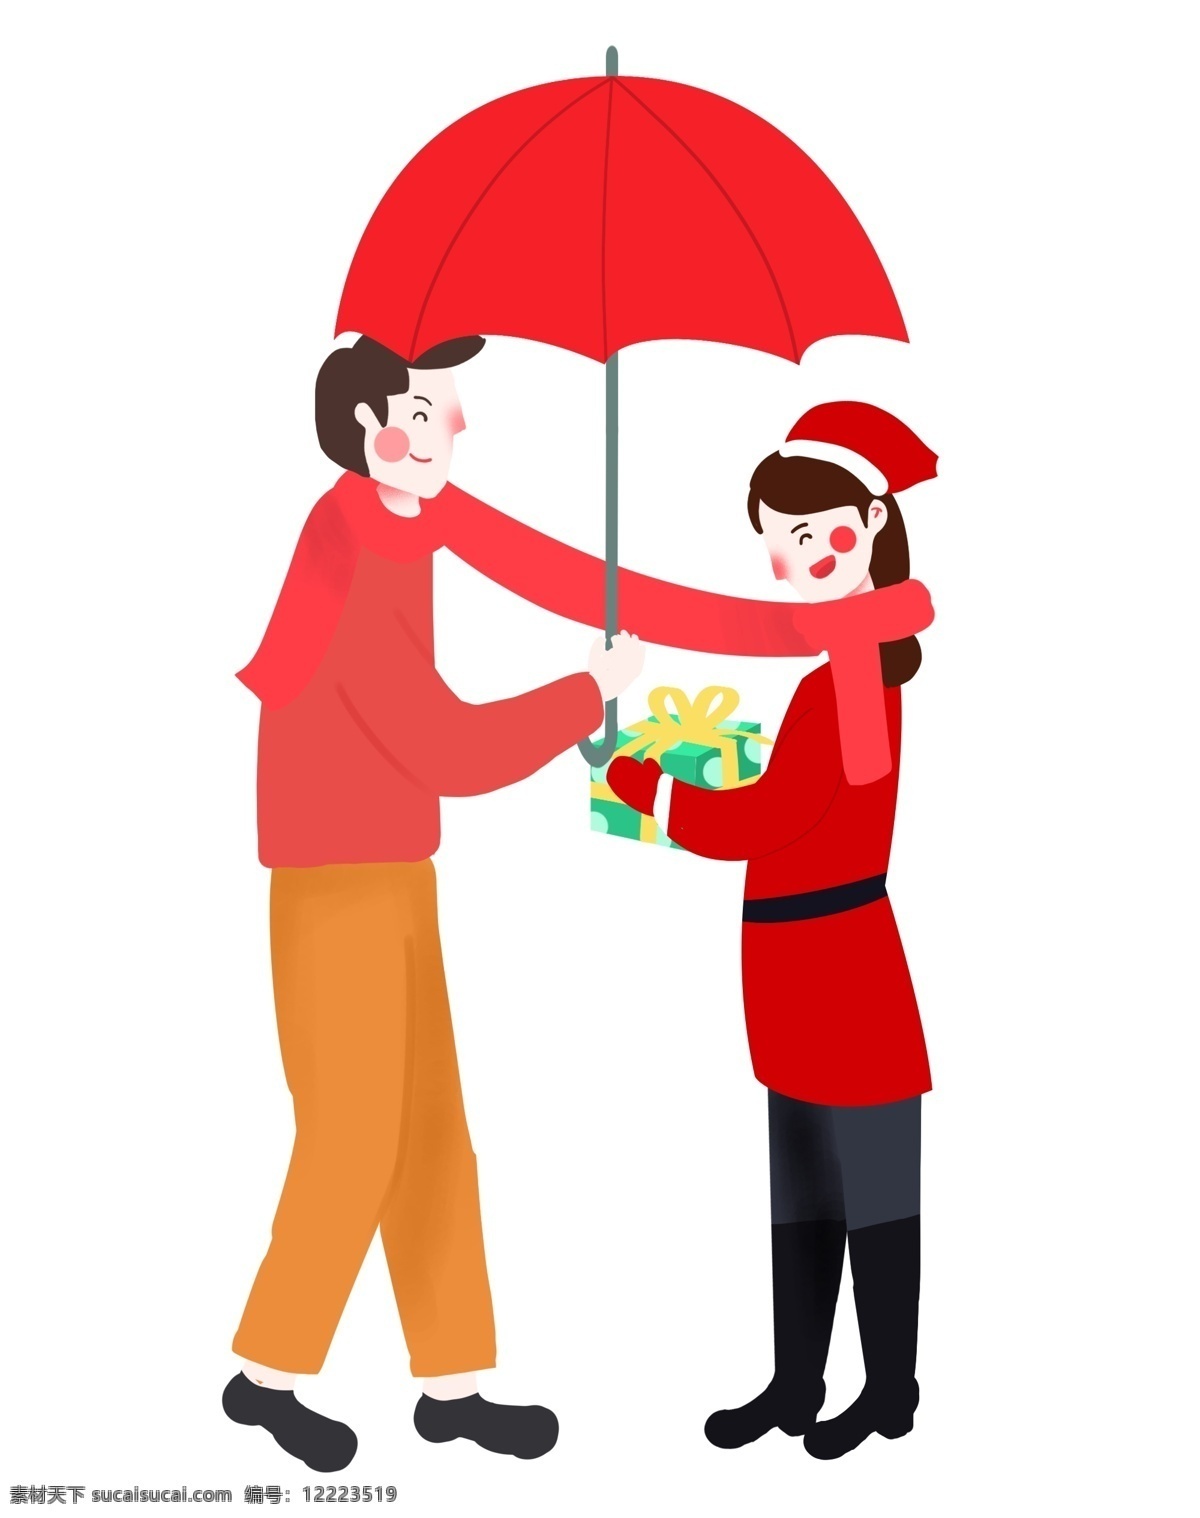 圣诞节 卡通 手绘 情侣 雨伞 围巾 欧美扁平风 送礼 物 男朋友 一起 圣诞 男女